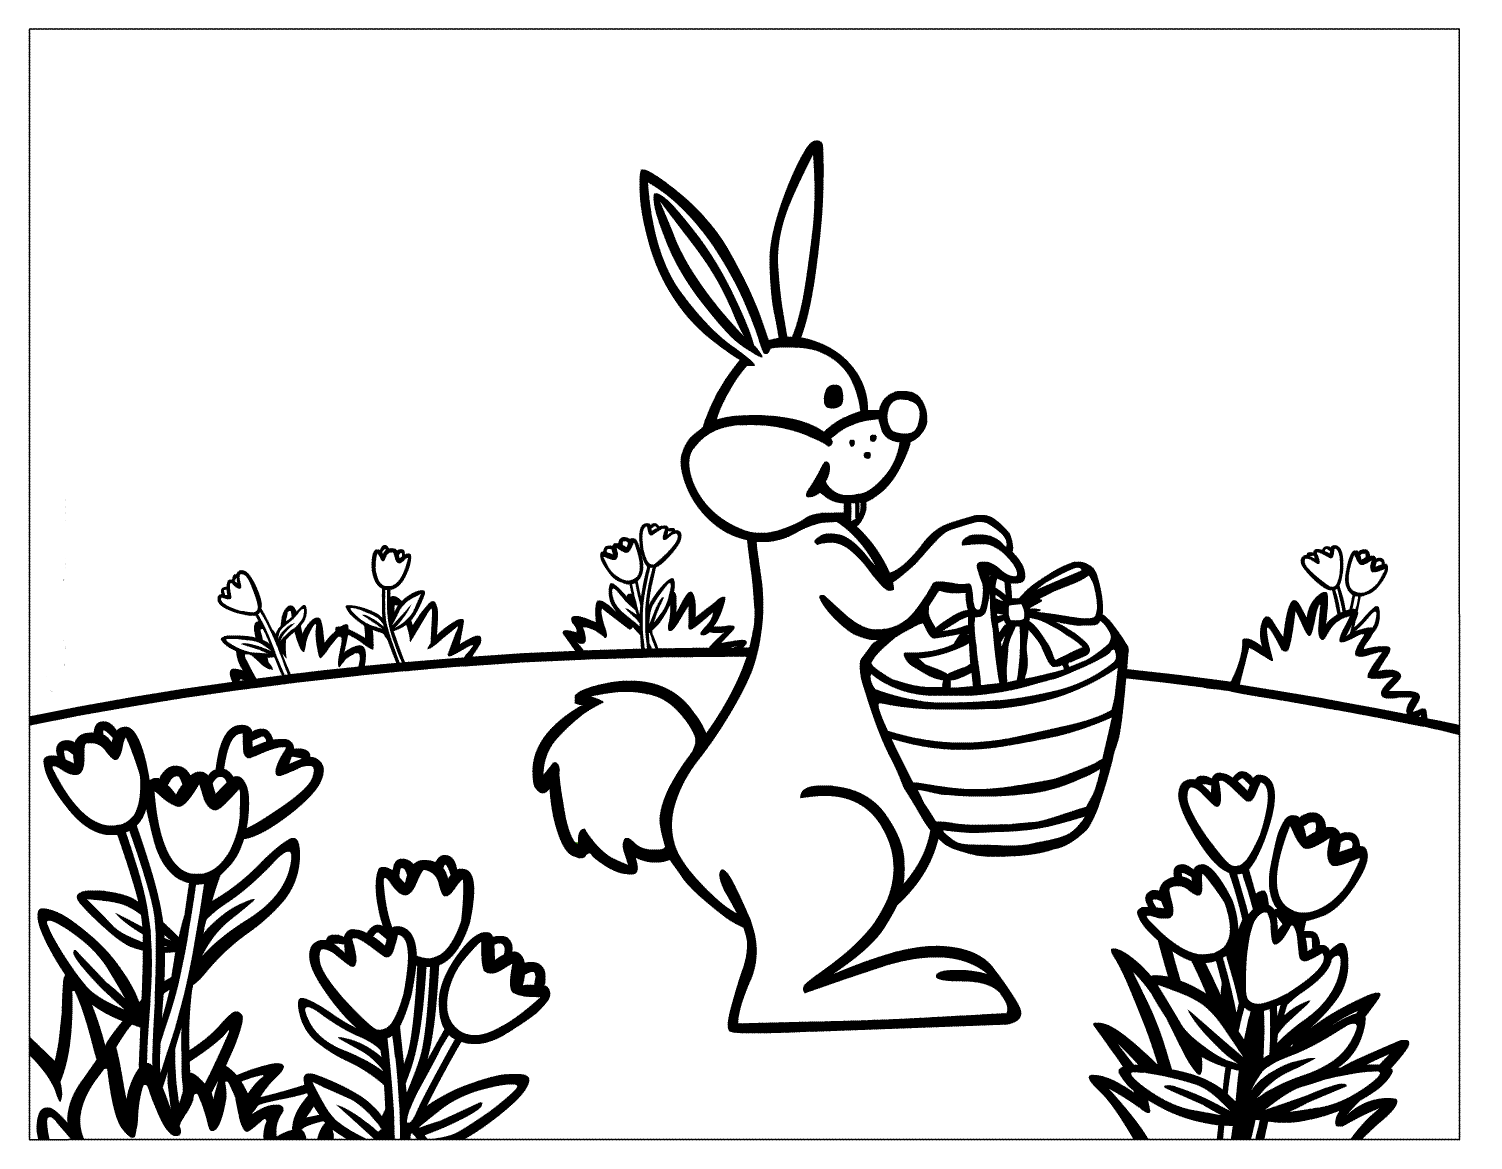 Tranh tô màu chú thỏ đi dạo